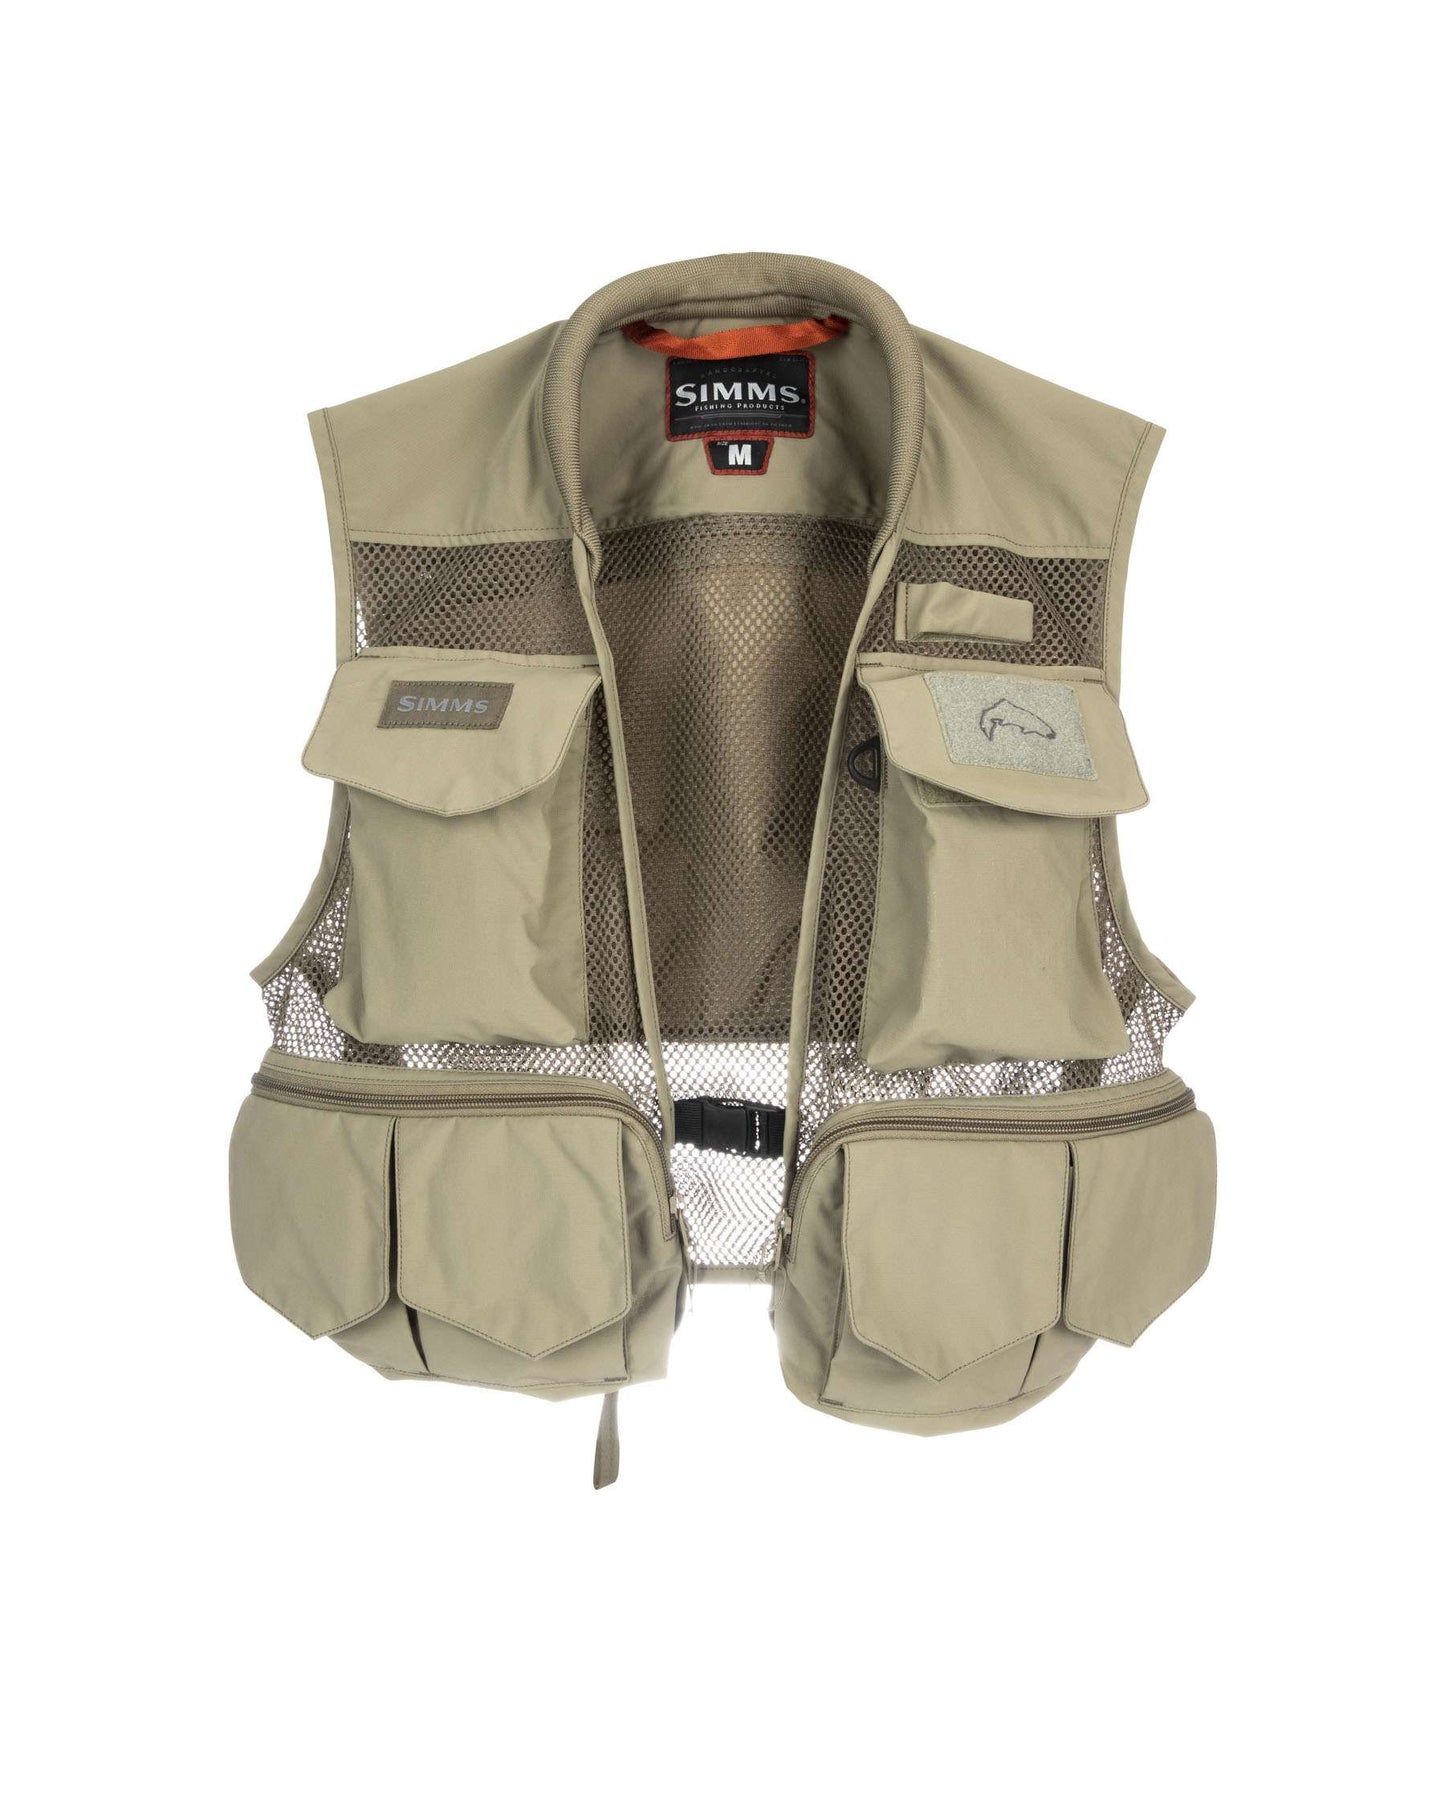 Tributary Fishing Vest - Tan